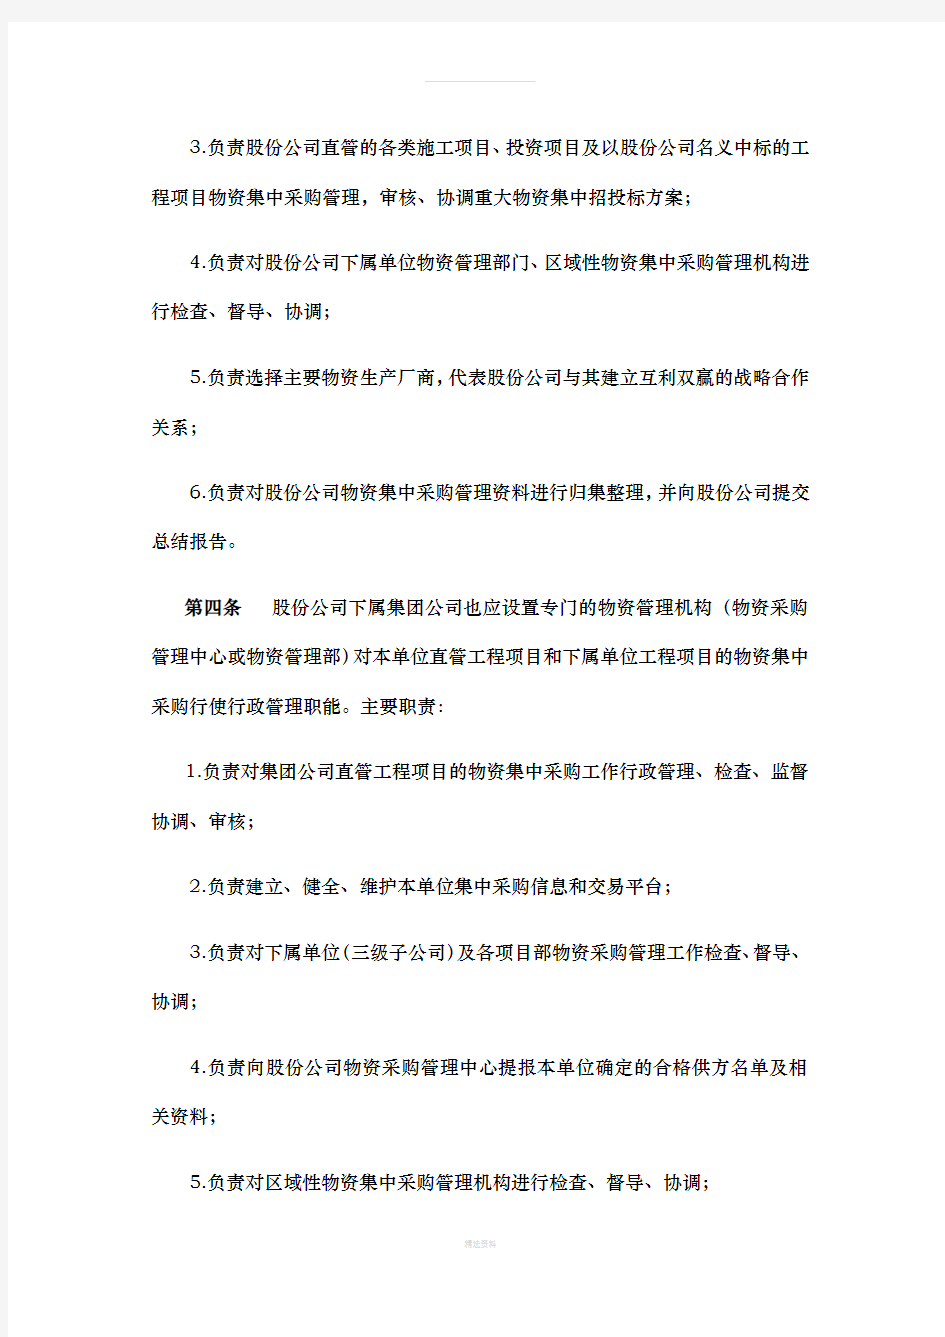 中国中铁股份有限公司工程项目物资集中采购管理办法(暂行)